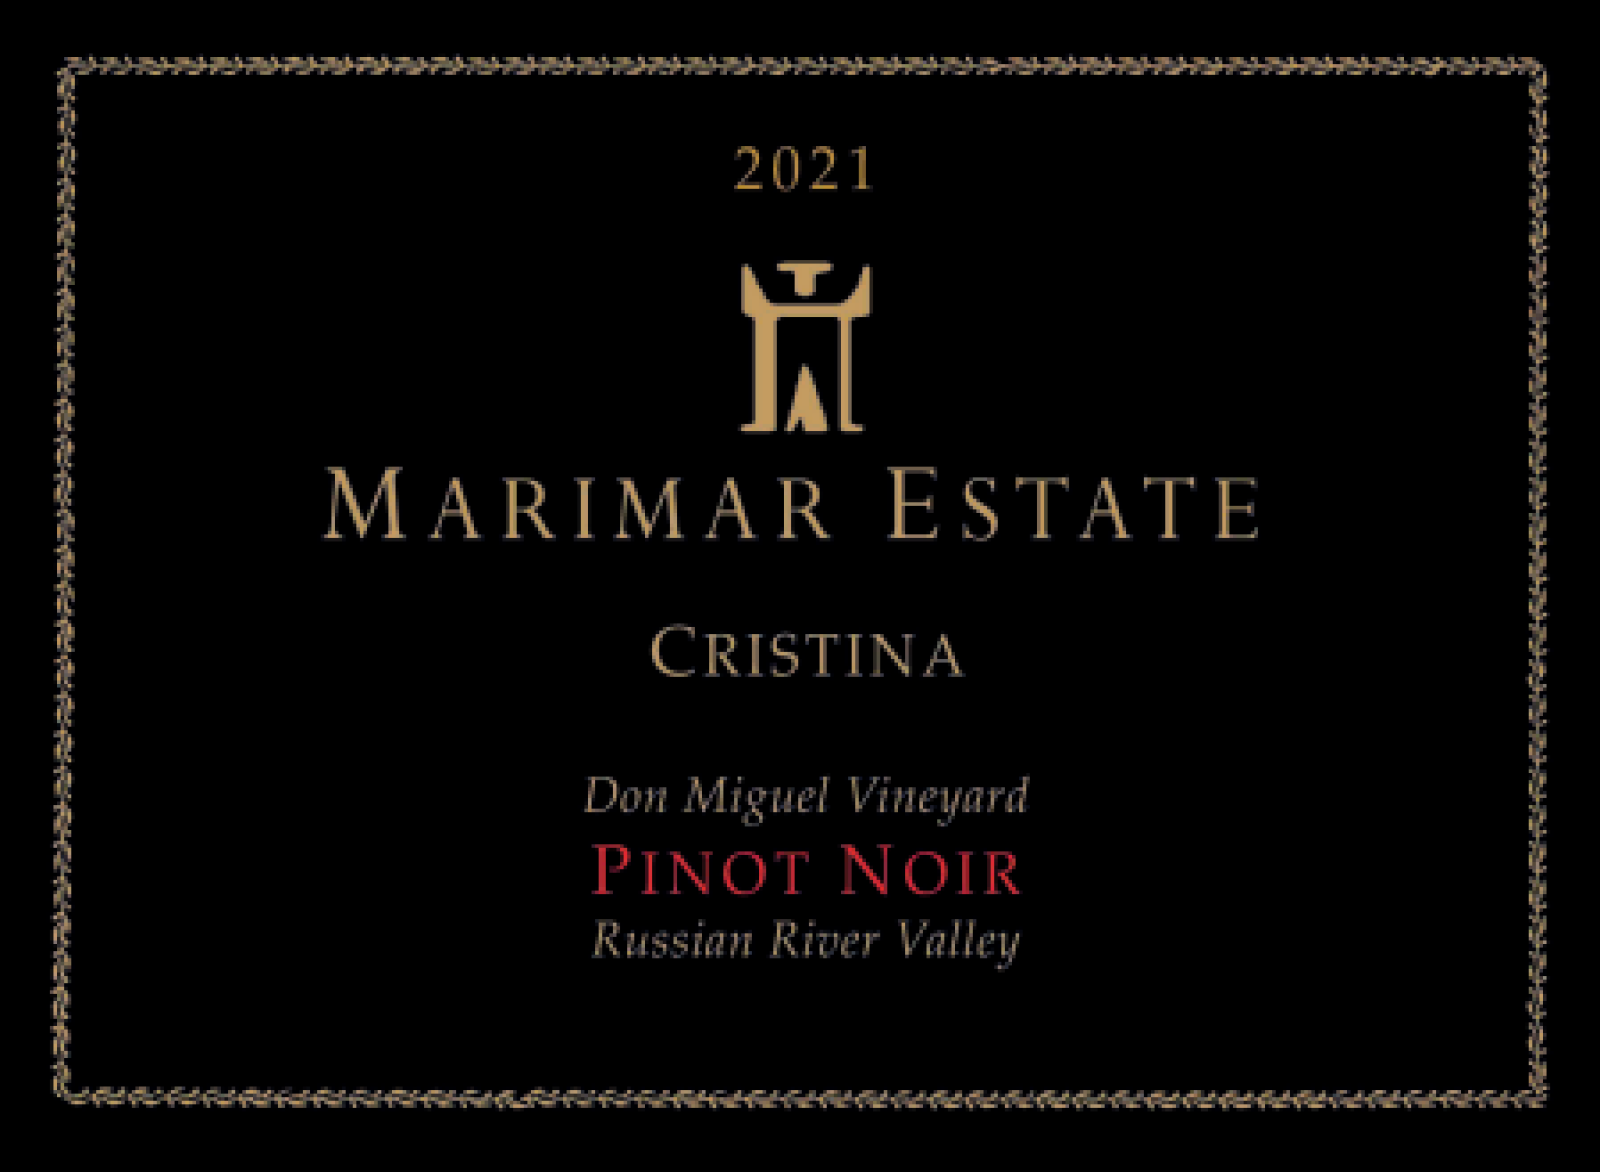 Marimar Cristina Pinot Noir 2021